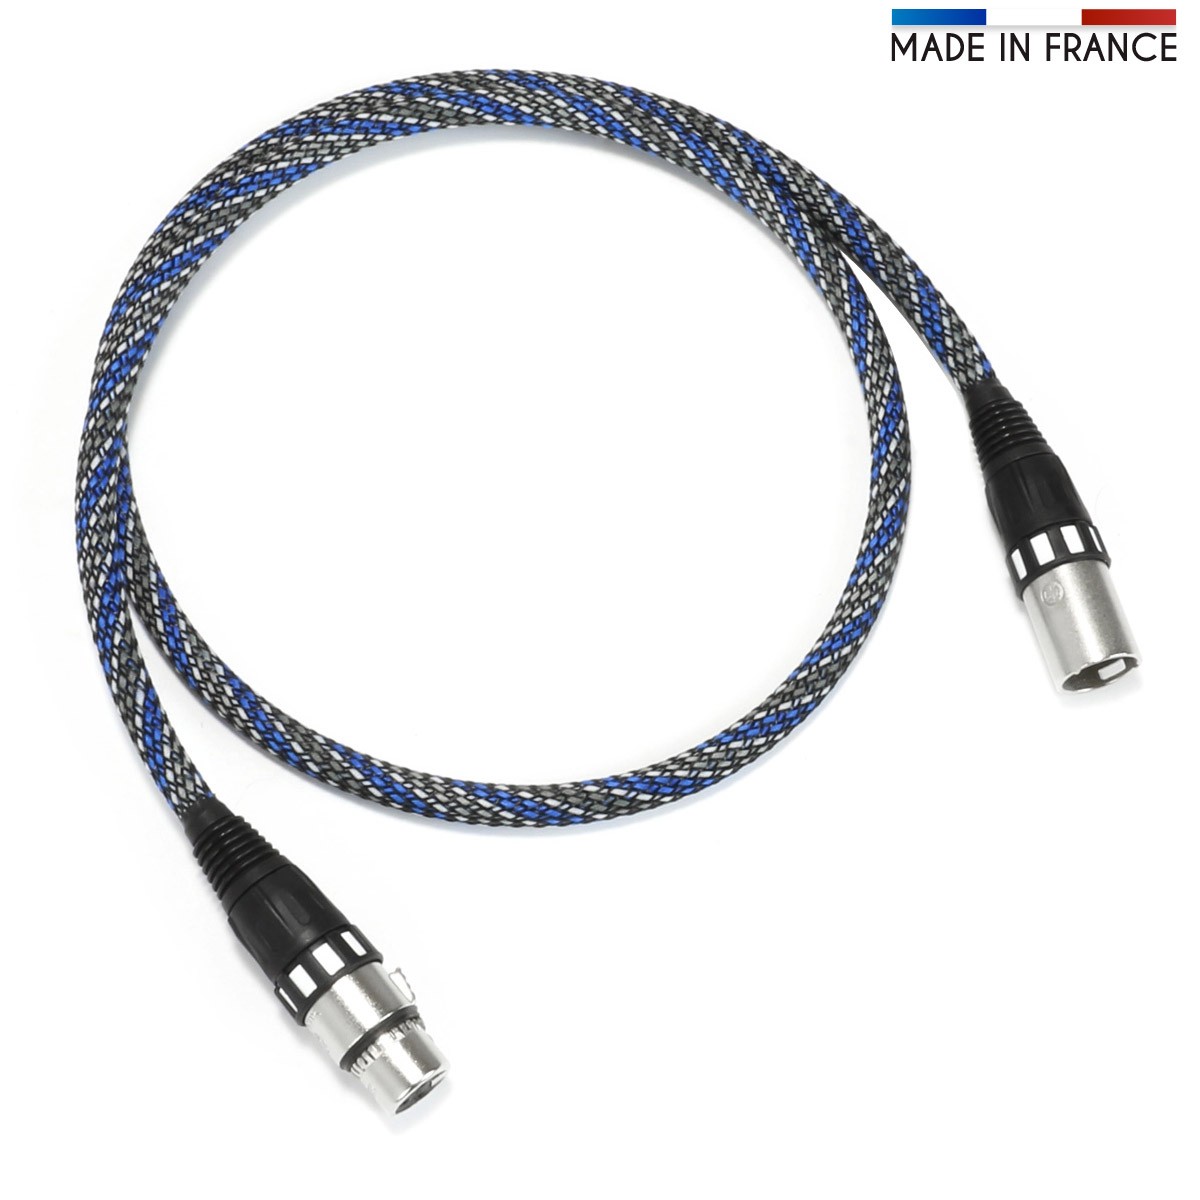 Viablue NF-S2 Silver Digital XLR Cable 22405 19 11/16in 110 Ohm Aes/Ebu Dmx512 